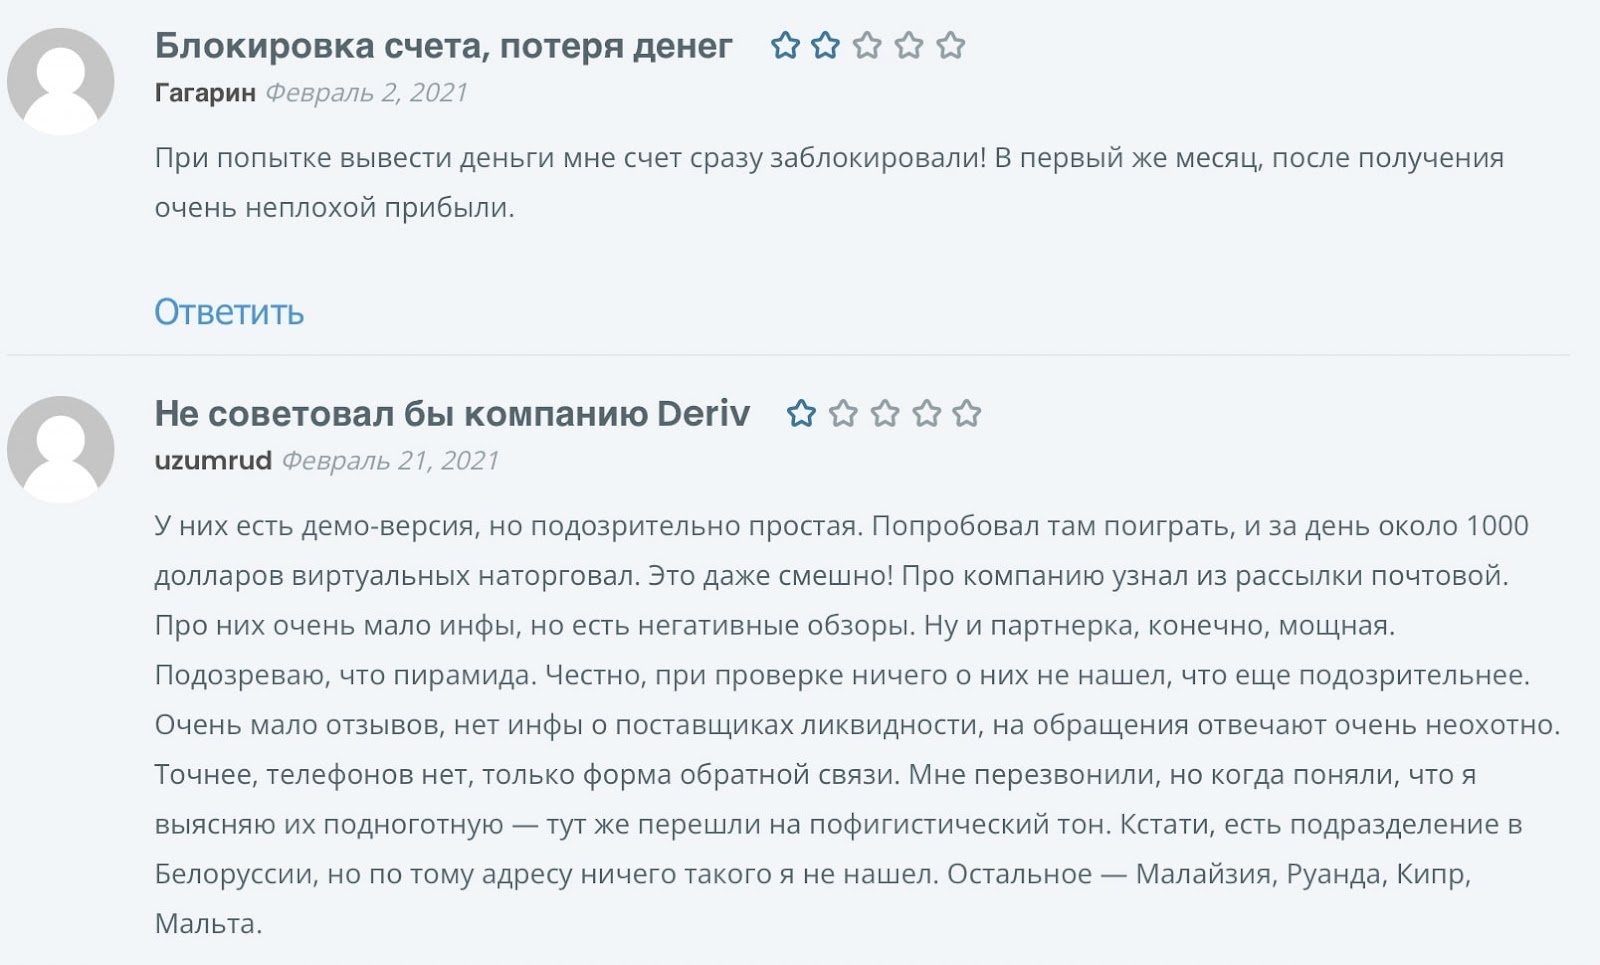 Deriv: отзывы пользователей о работе компании в 2022 году